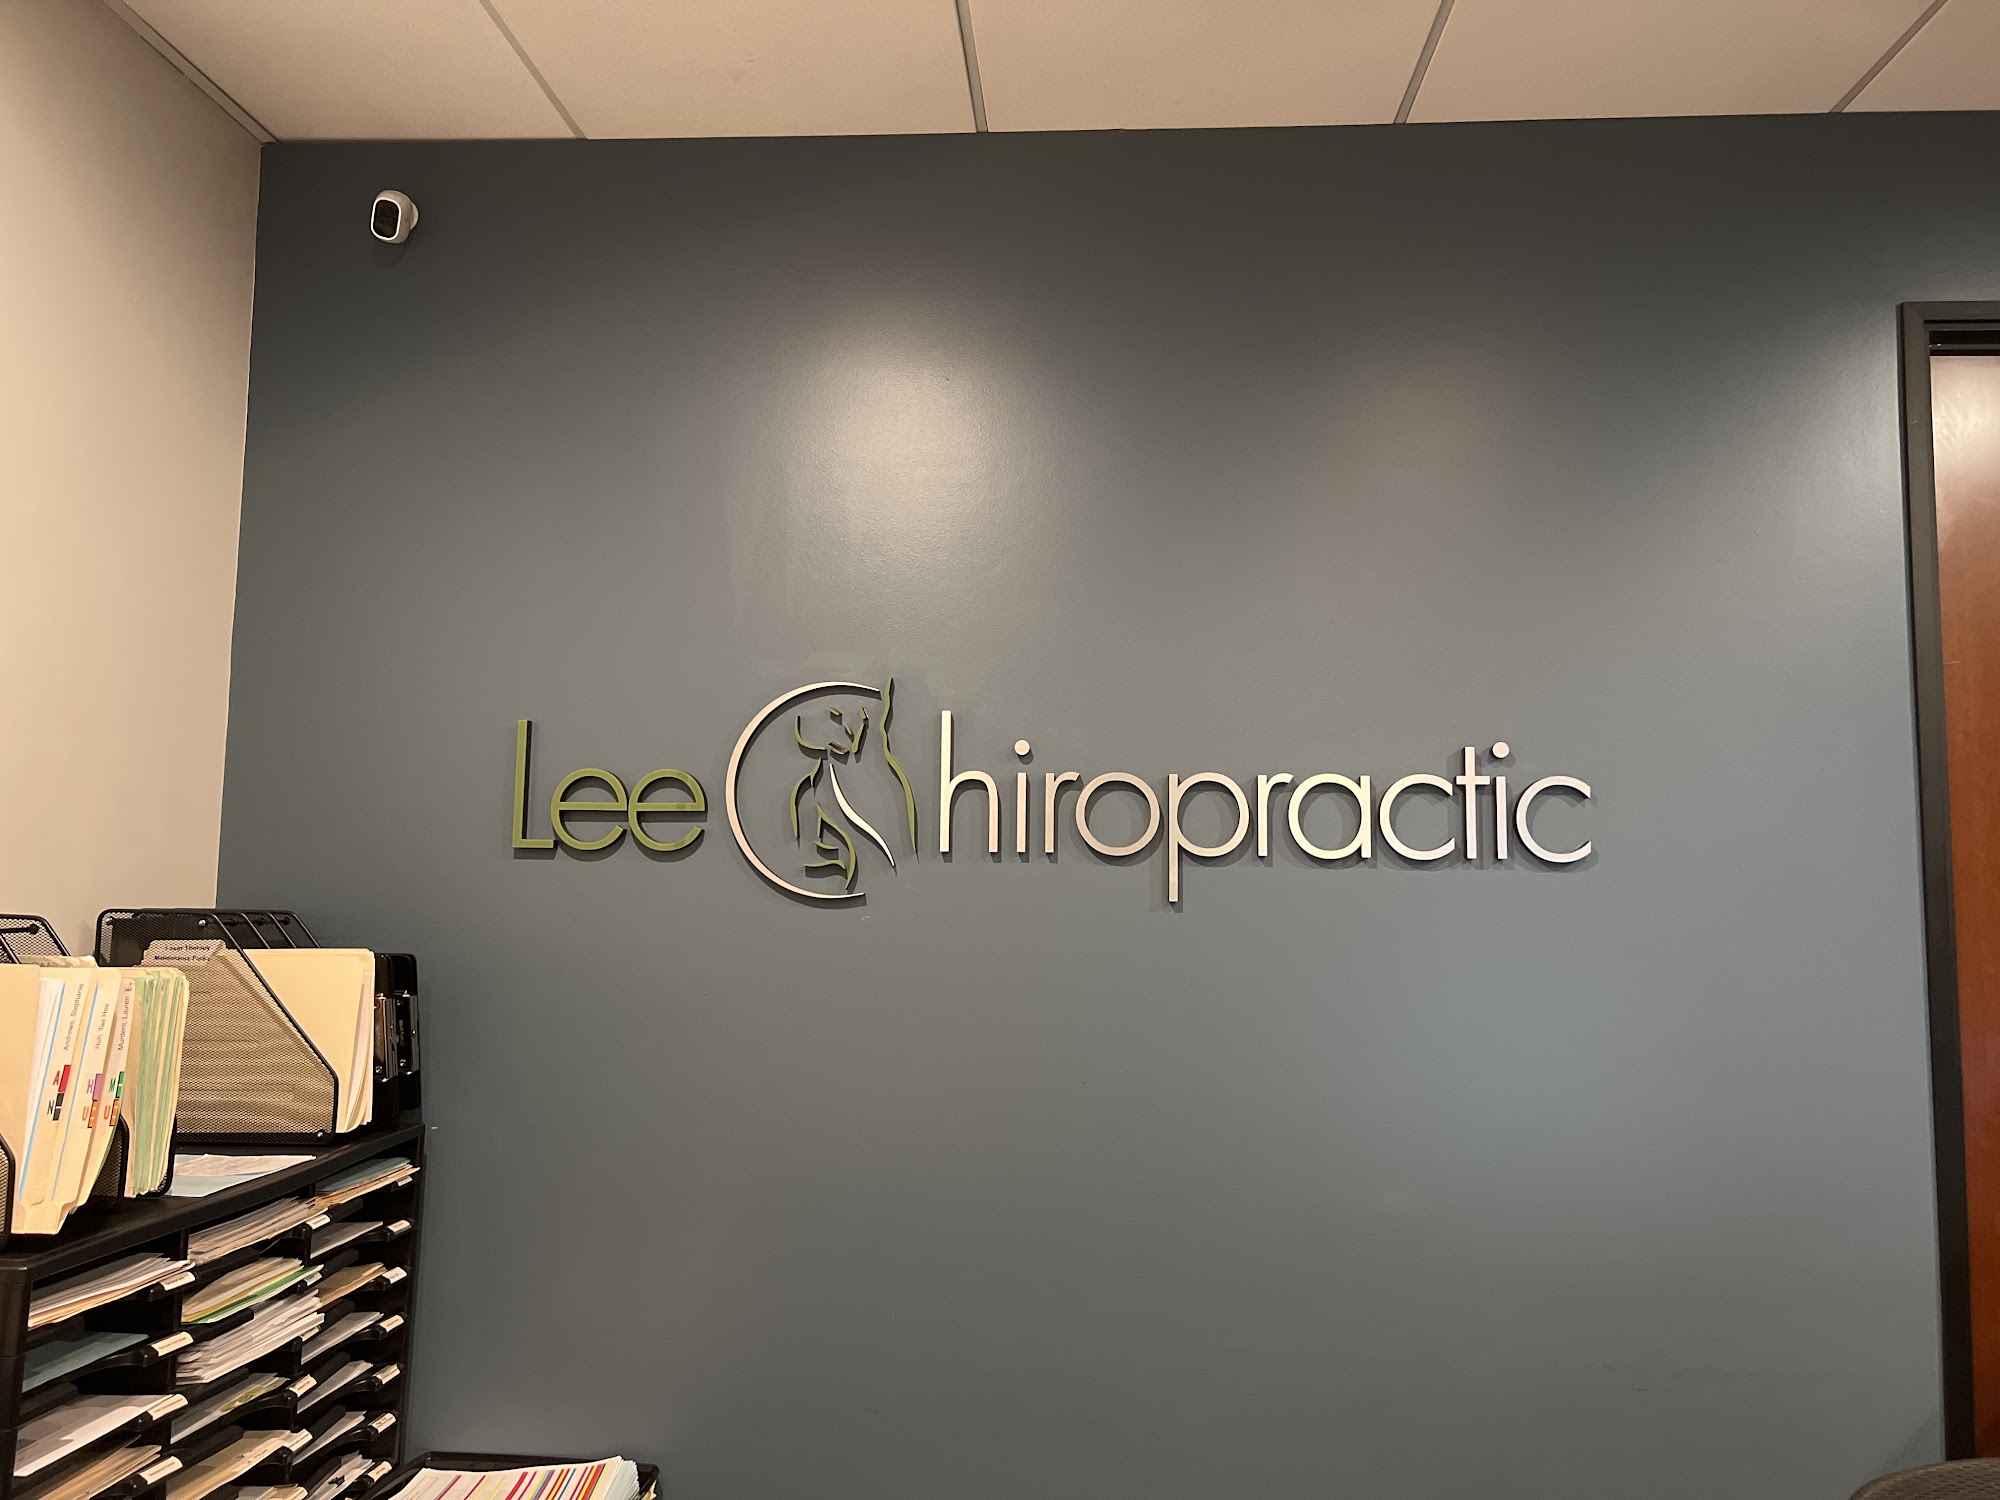 Lee Chiropractic